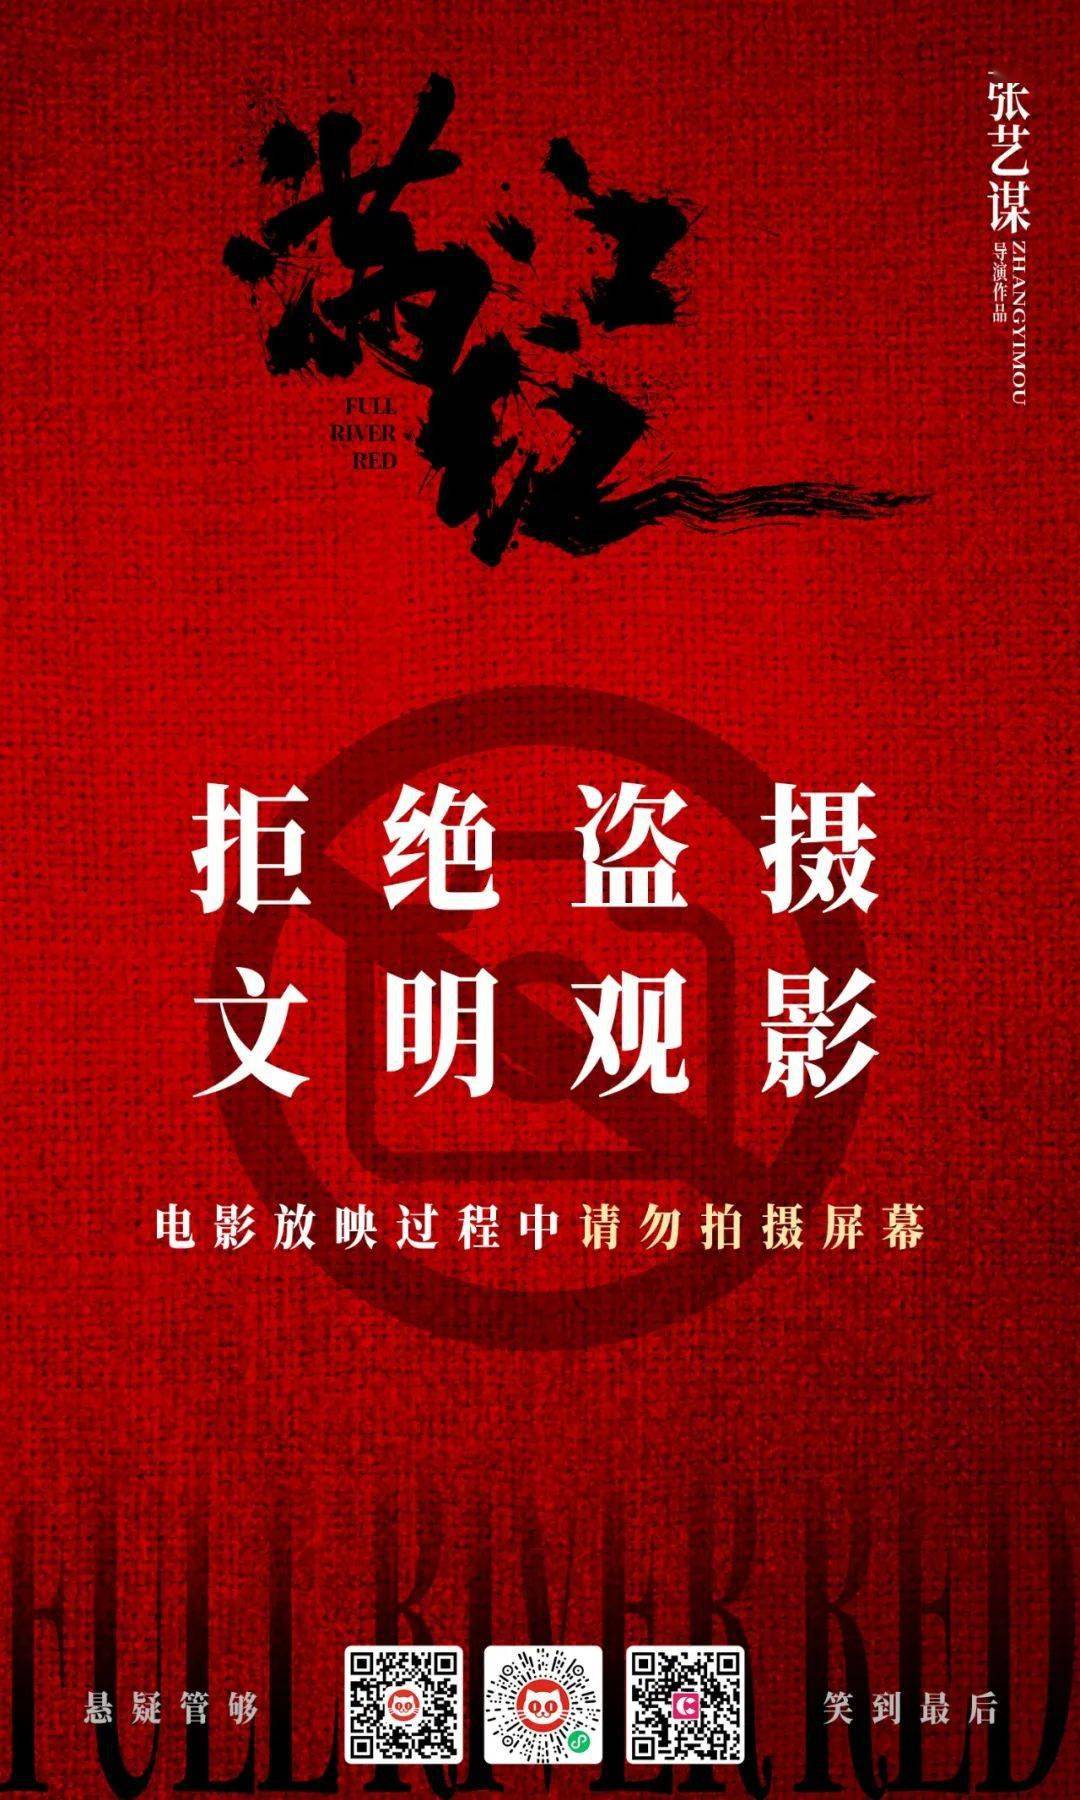 春节档七部电影联合呼吁“拒绝盗版、抵制摄屏”